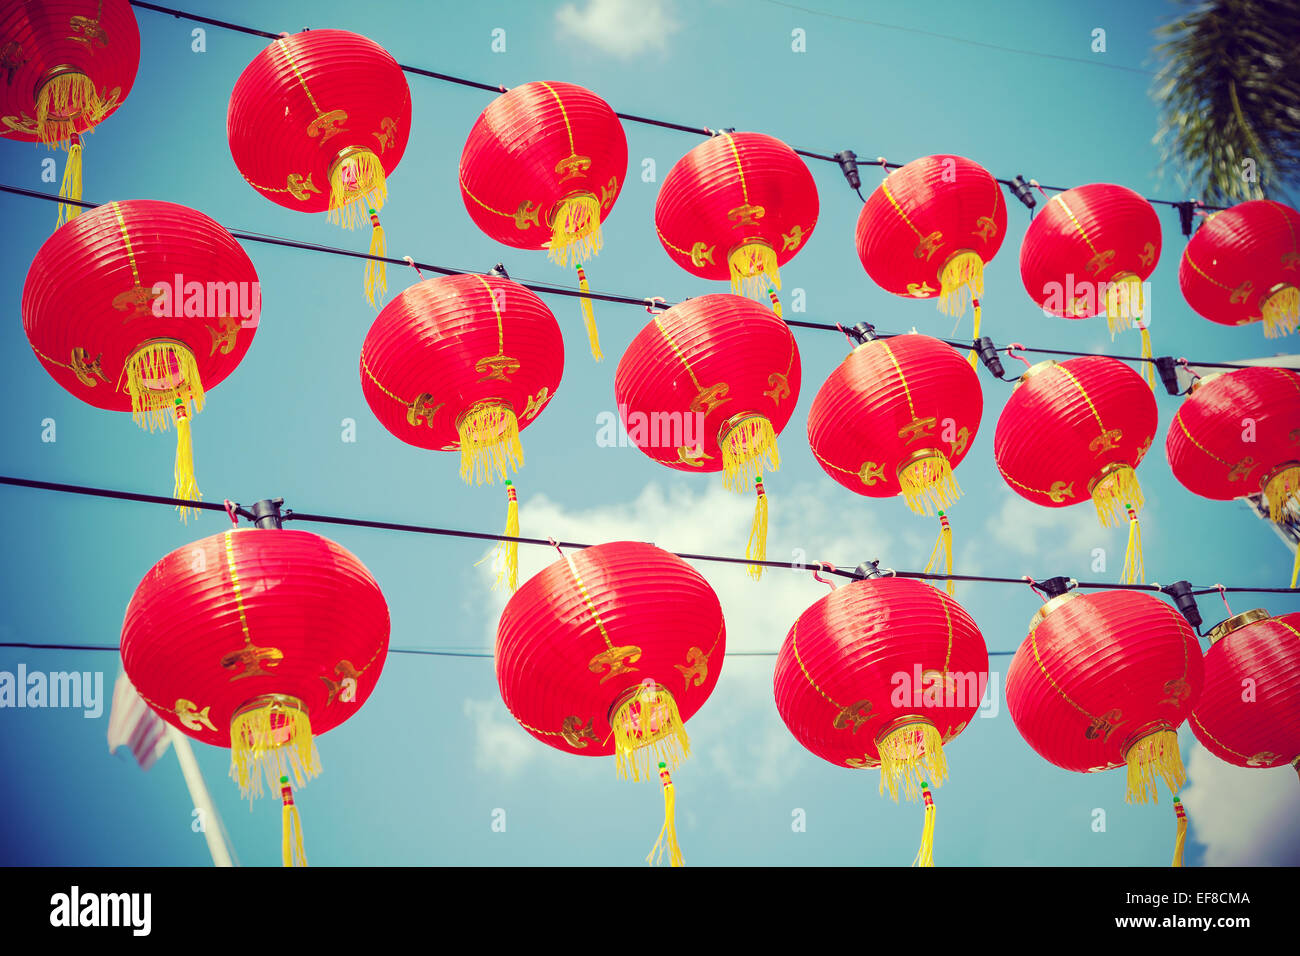 Retro-gefilterte chinesische rote Papierlaternen gegen blauen Himmel. Stockfoto